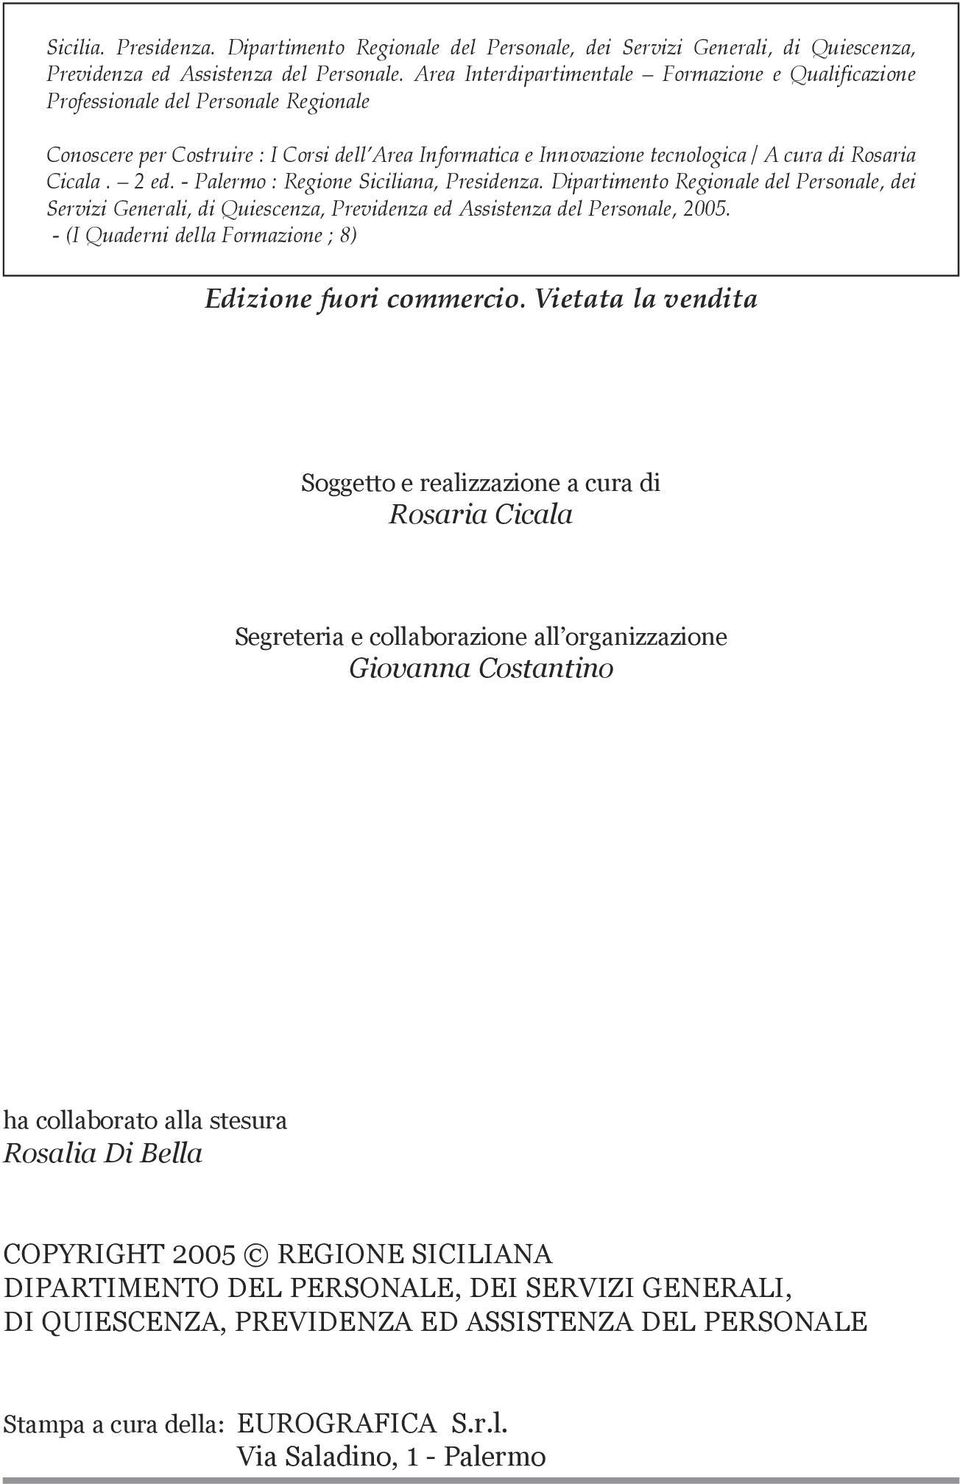 2 ed. - Palermo : Regione Siciliana, Presidenza. Dipartimento Regionale del Personale, dei Servizi Generali, di Quiescenza, Previdenza ed Assistenza del Personale, 2005.